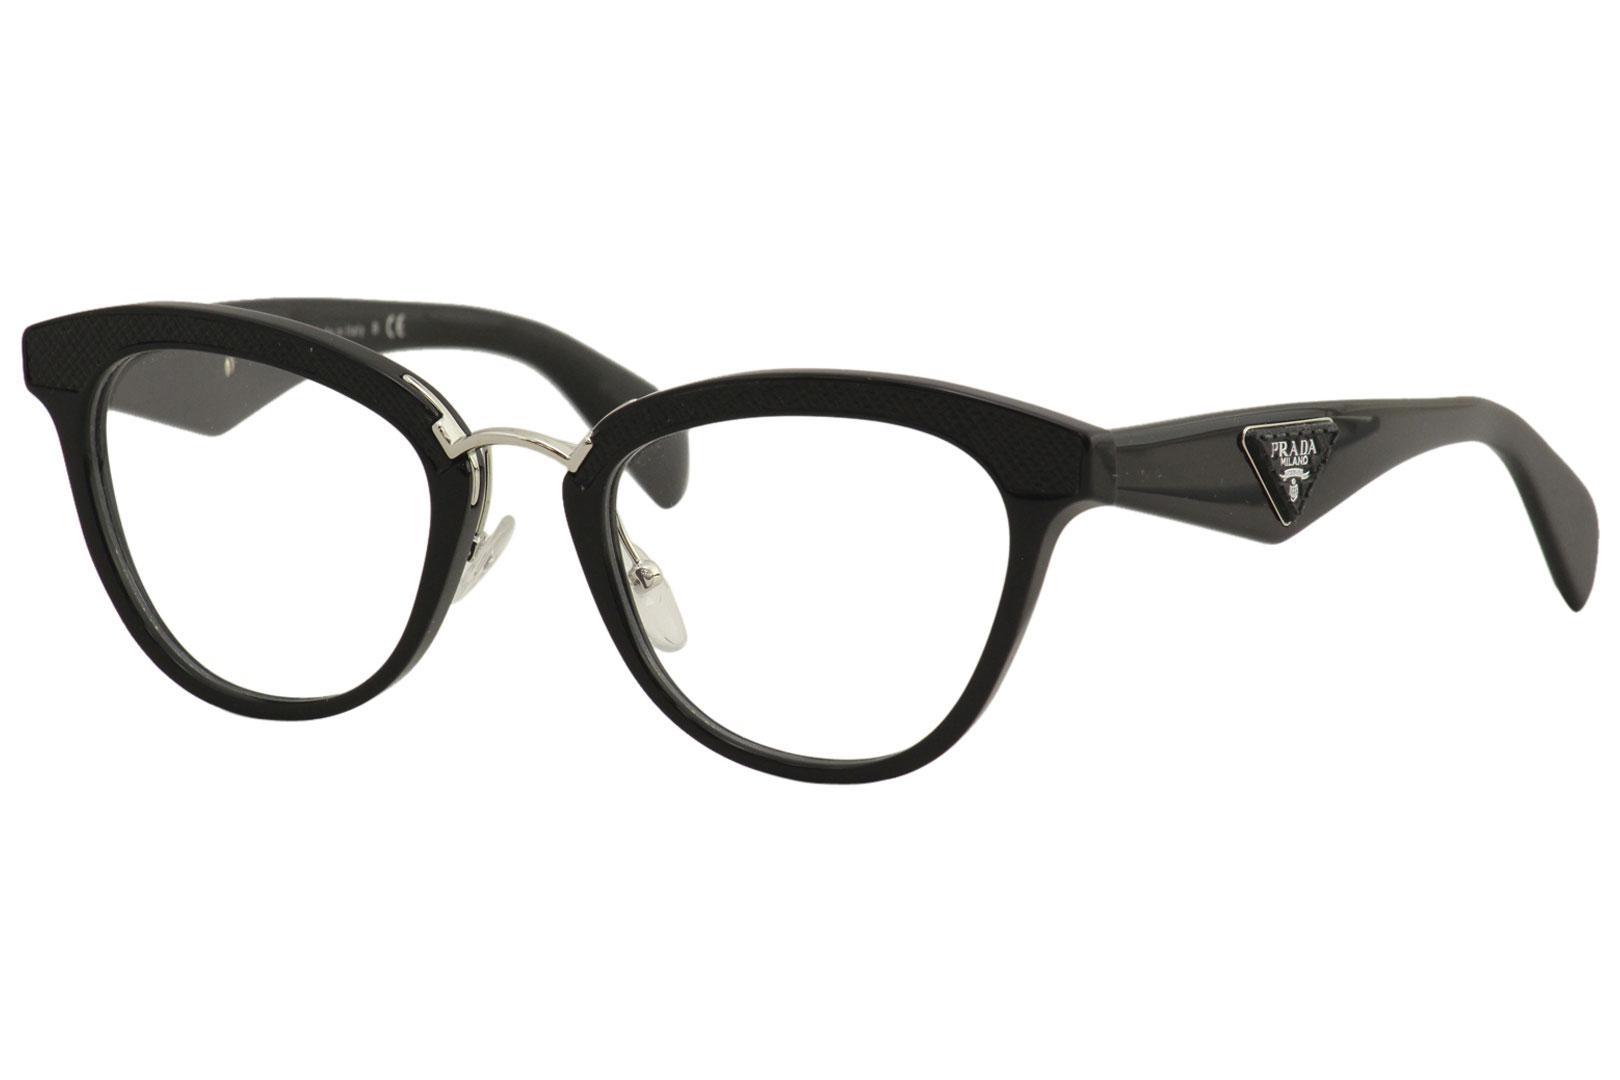 Prada Women's Eyeglasses VPR26S VPR/26/S Full Rim Optical Frame ...